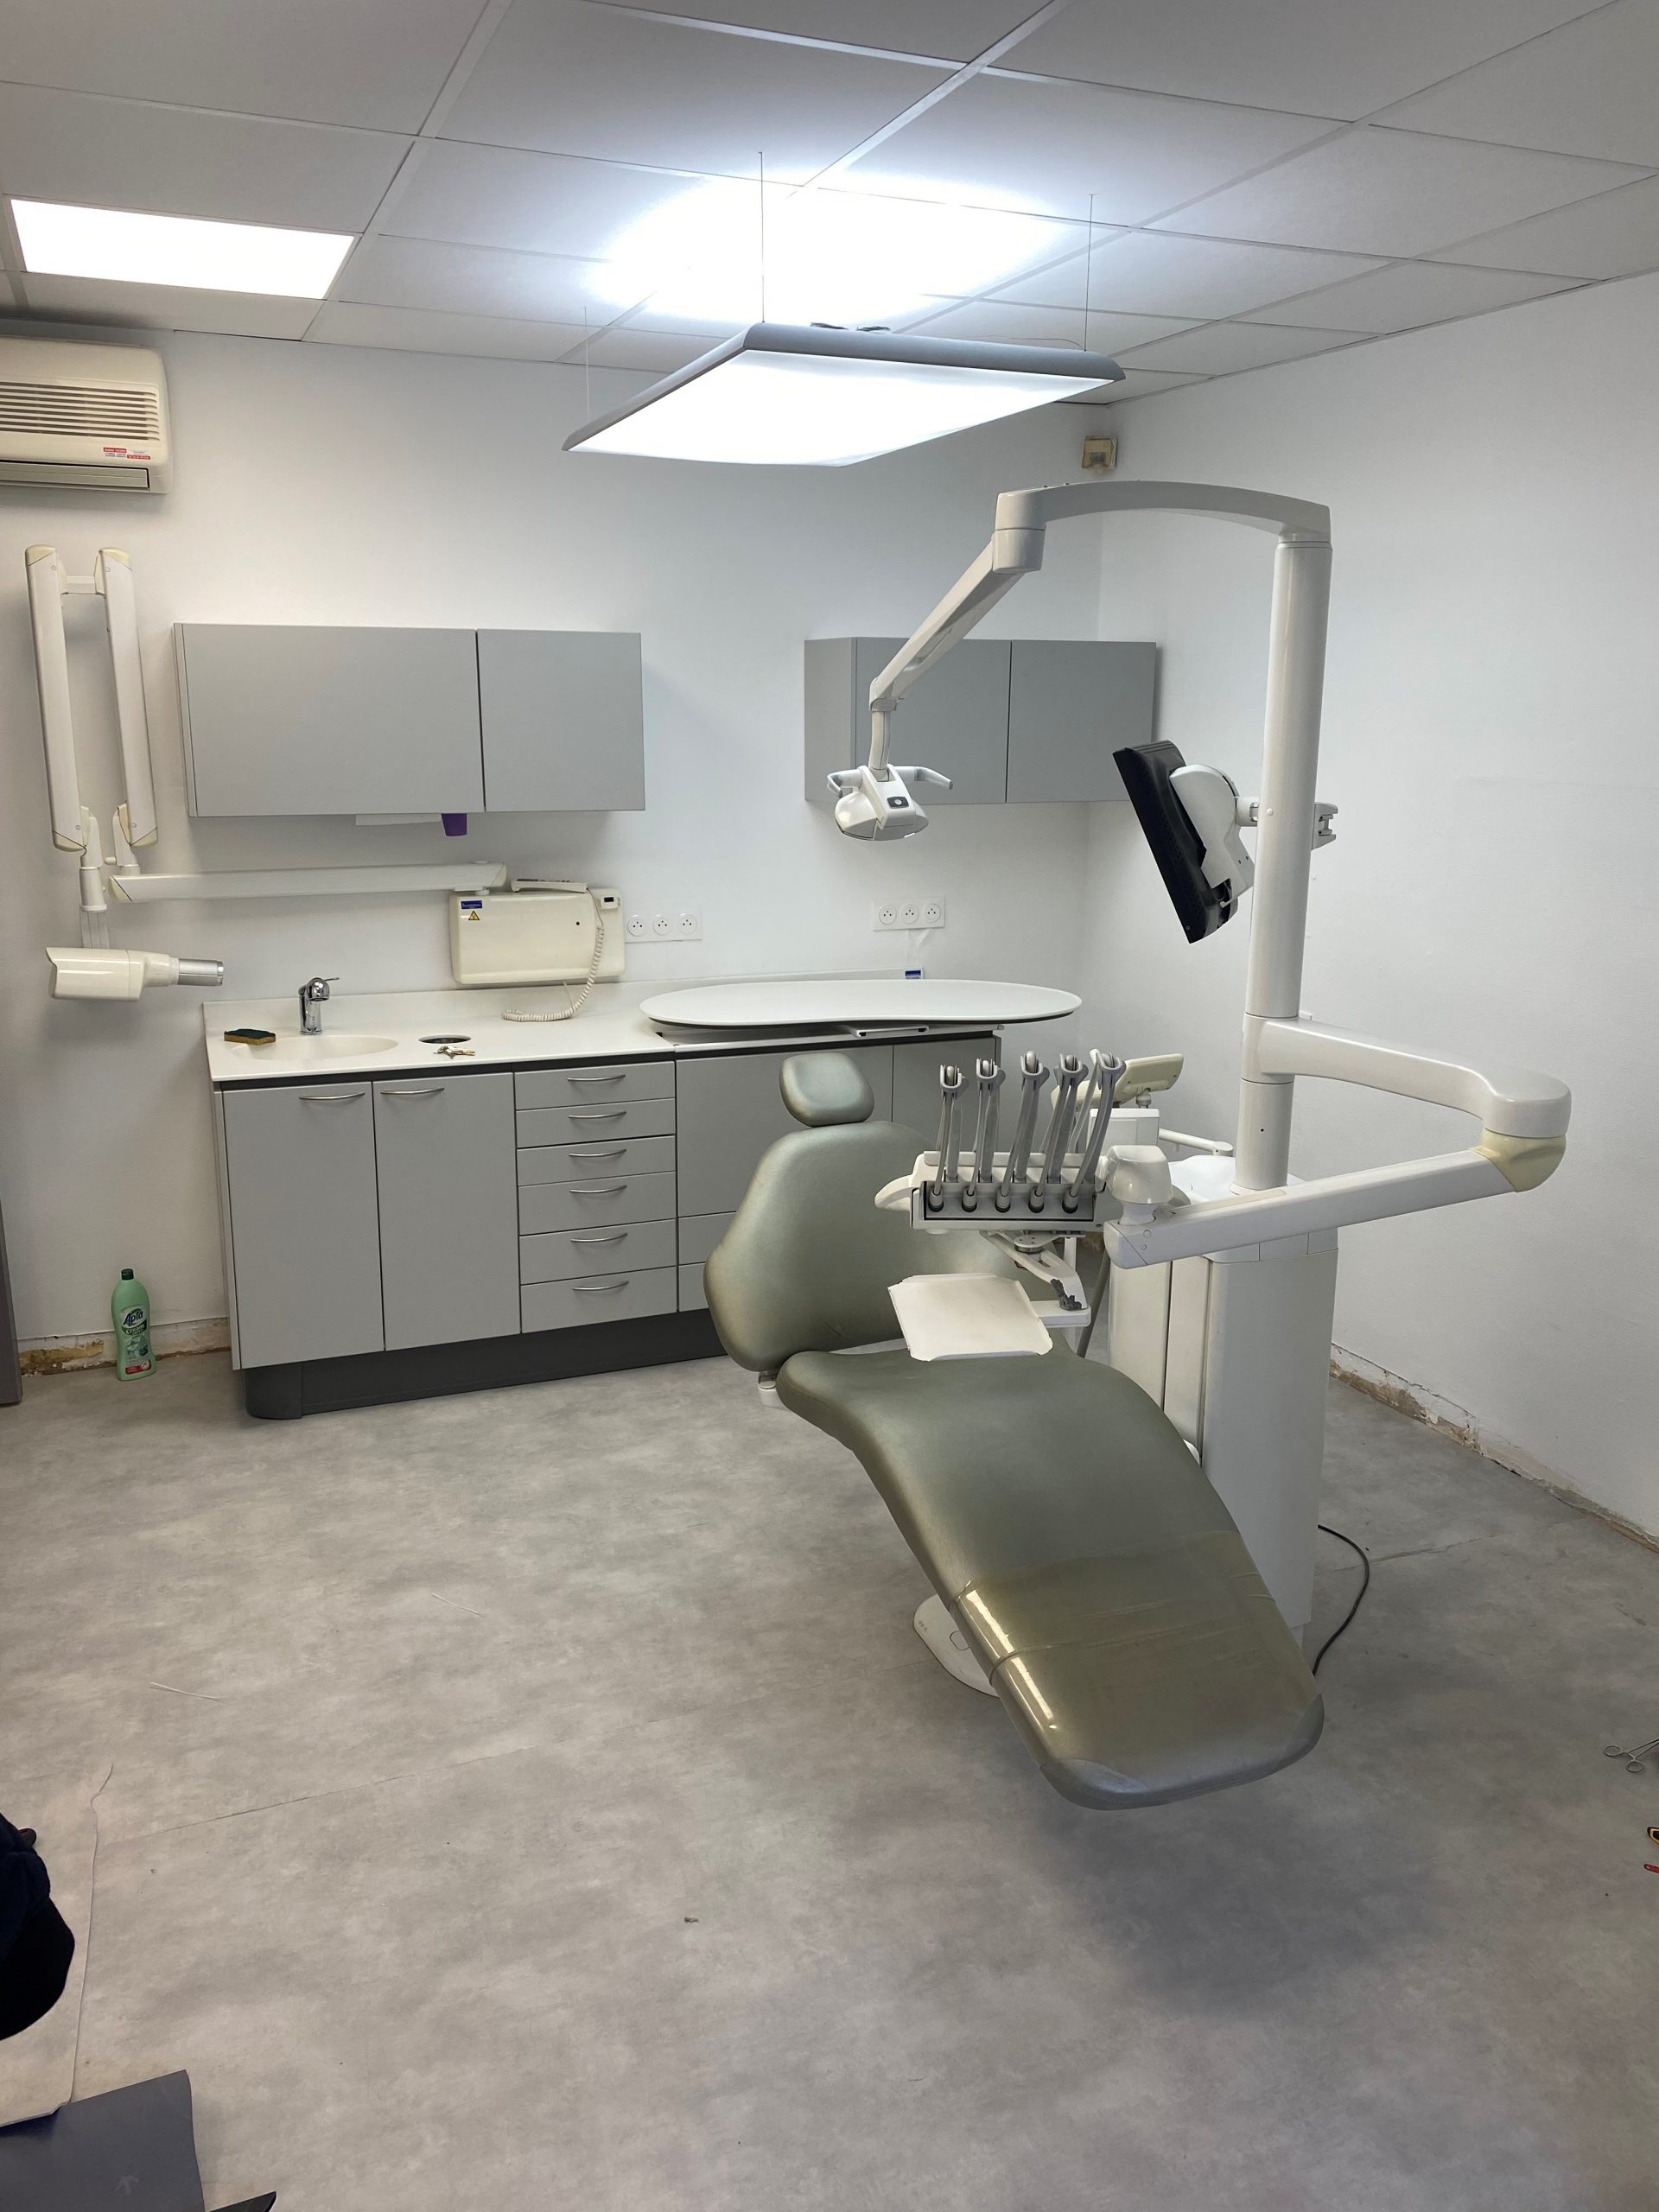 Cabinet dentaire – Omnipratique Crépy en valois – 60 Déménagement d’une salle de soins comprenant un fauteuil PLANMECA, des meubles dentaires, et une radio murale.